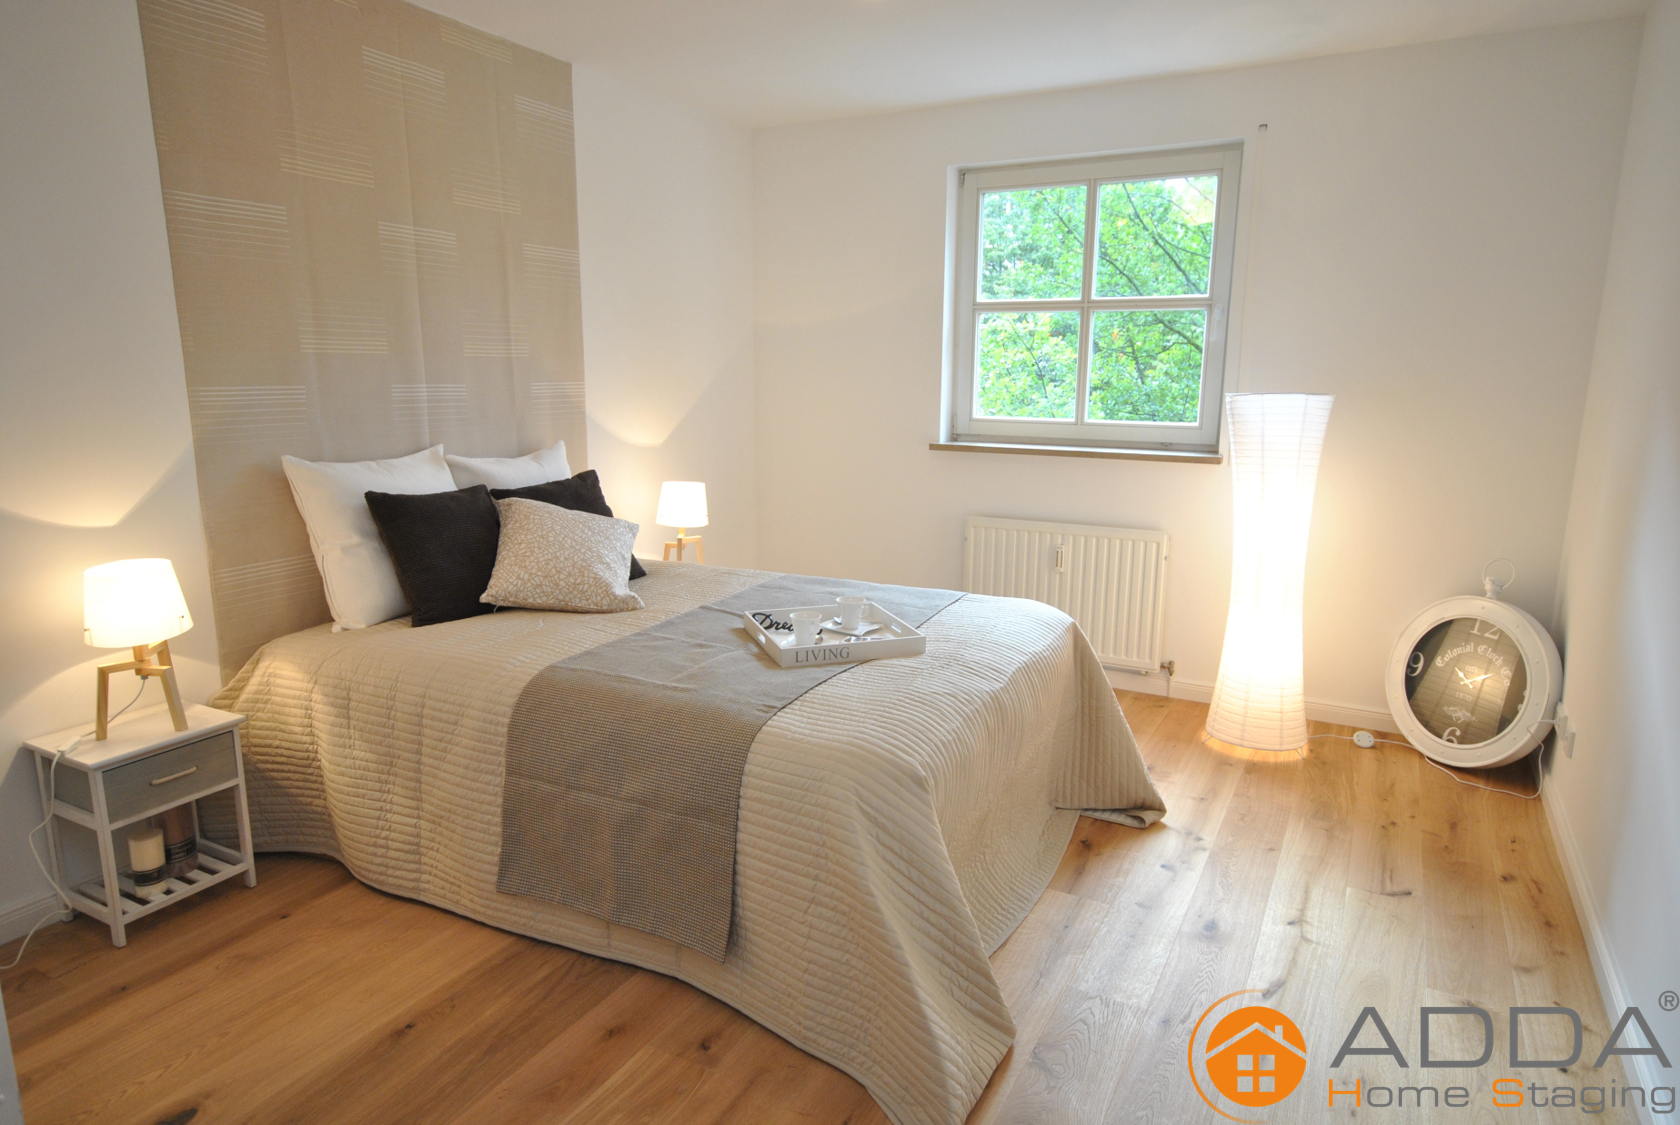 Schlazimmer nach ADDA Homestaging #raumgestaltung ©ADDA Homestaging